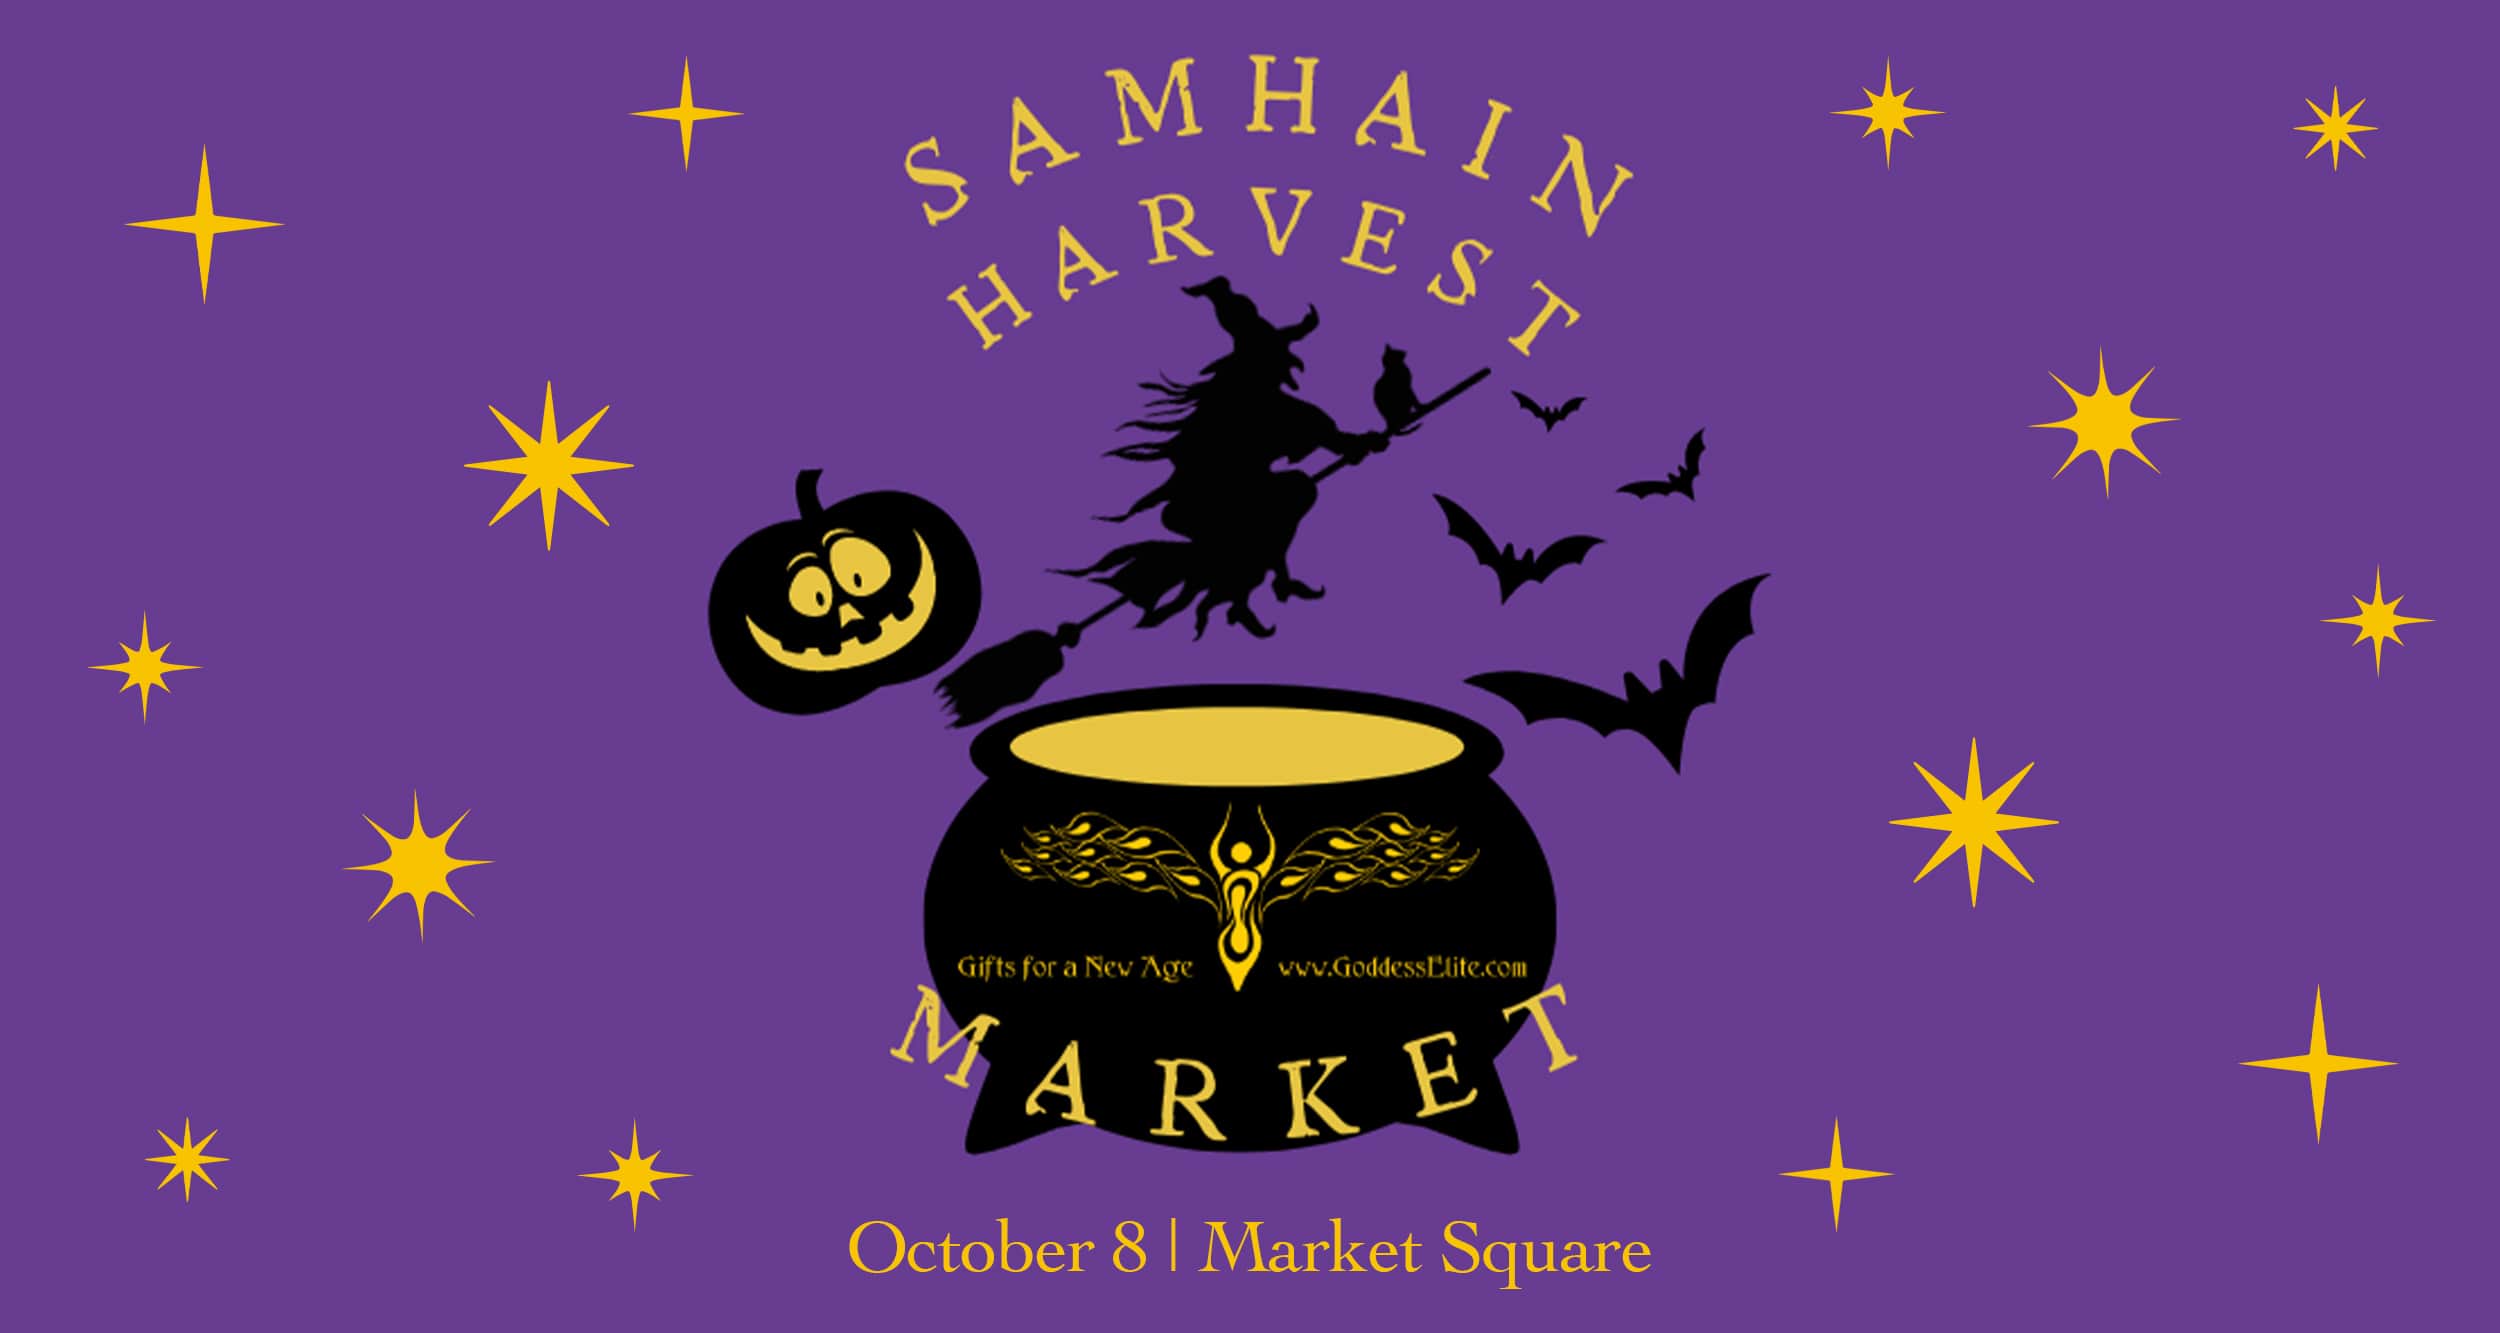 Samhain Harvest Market